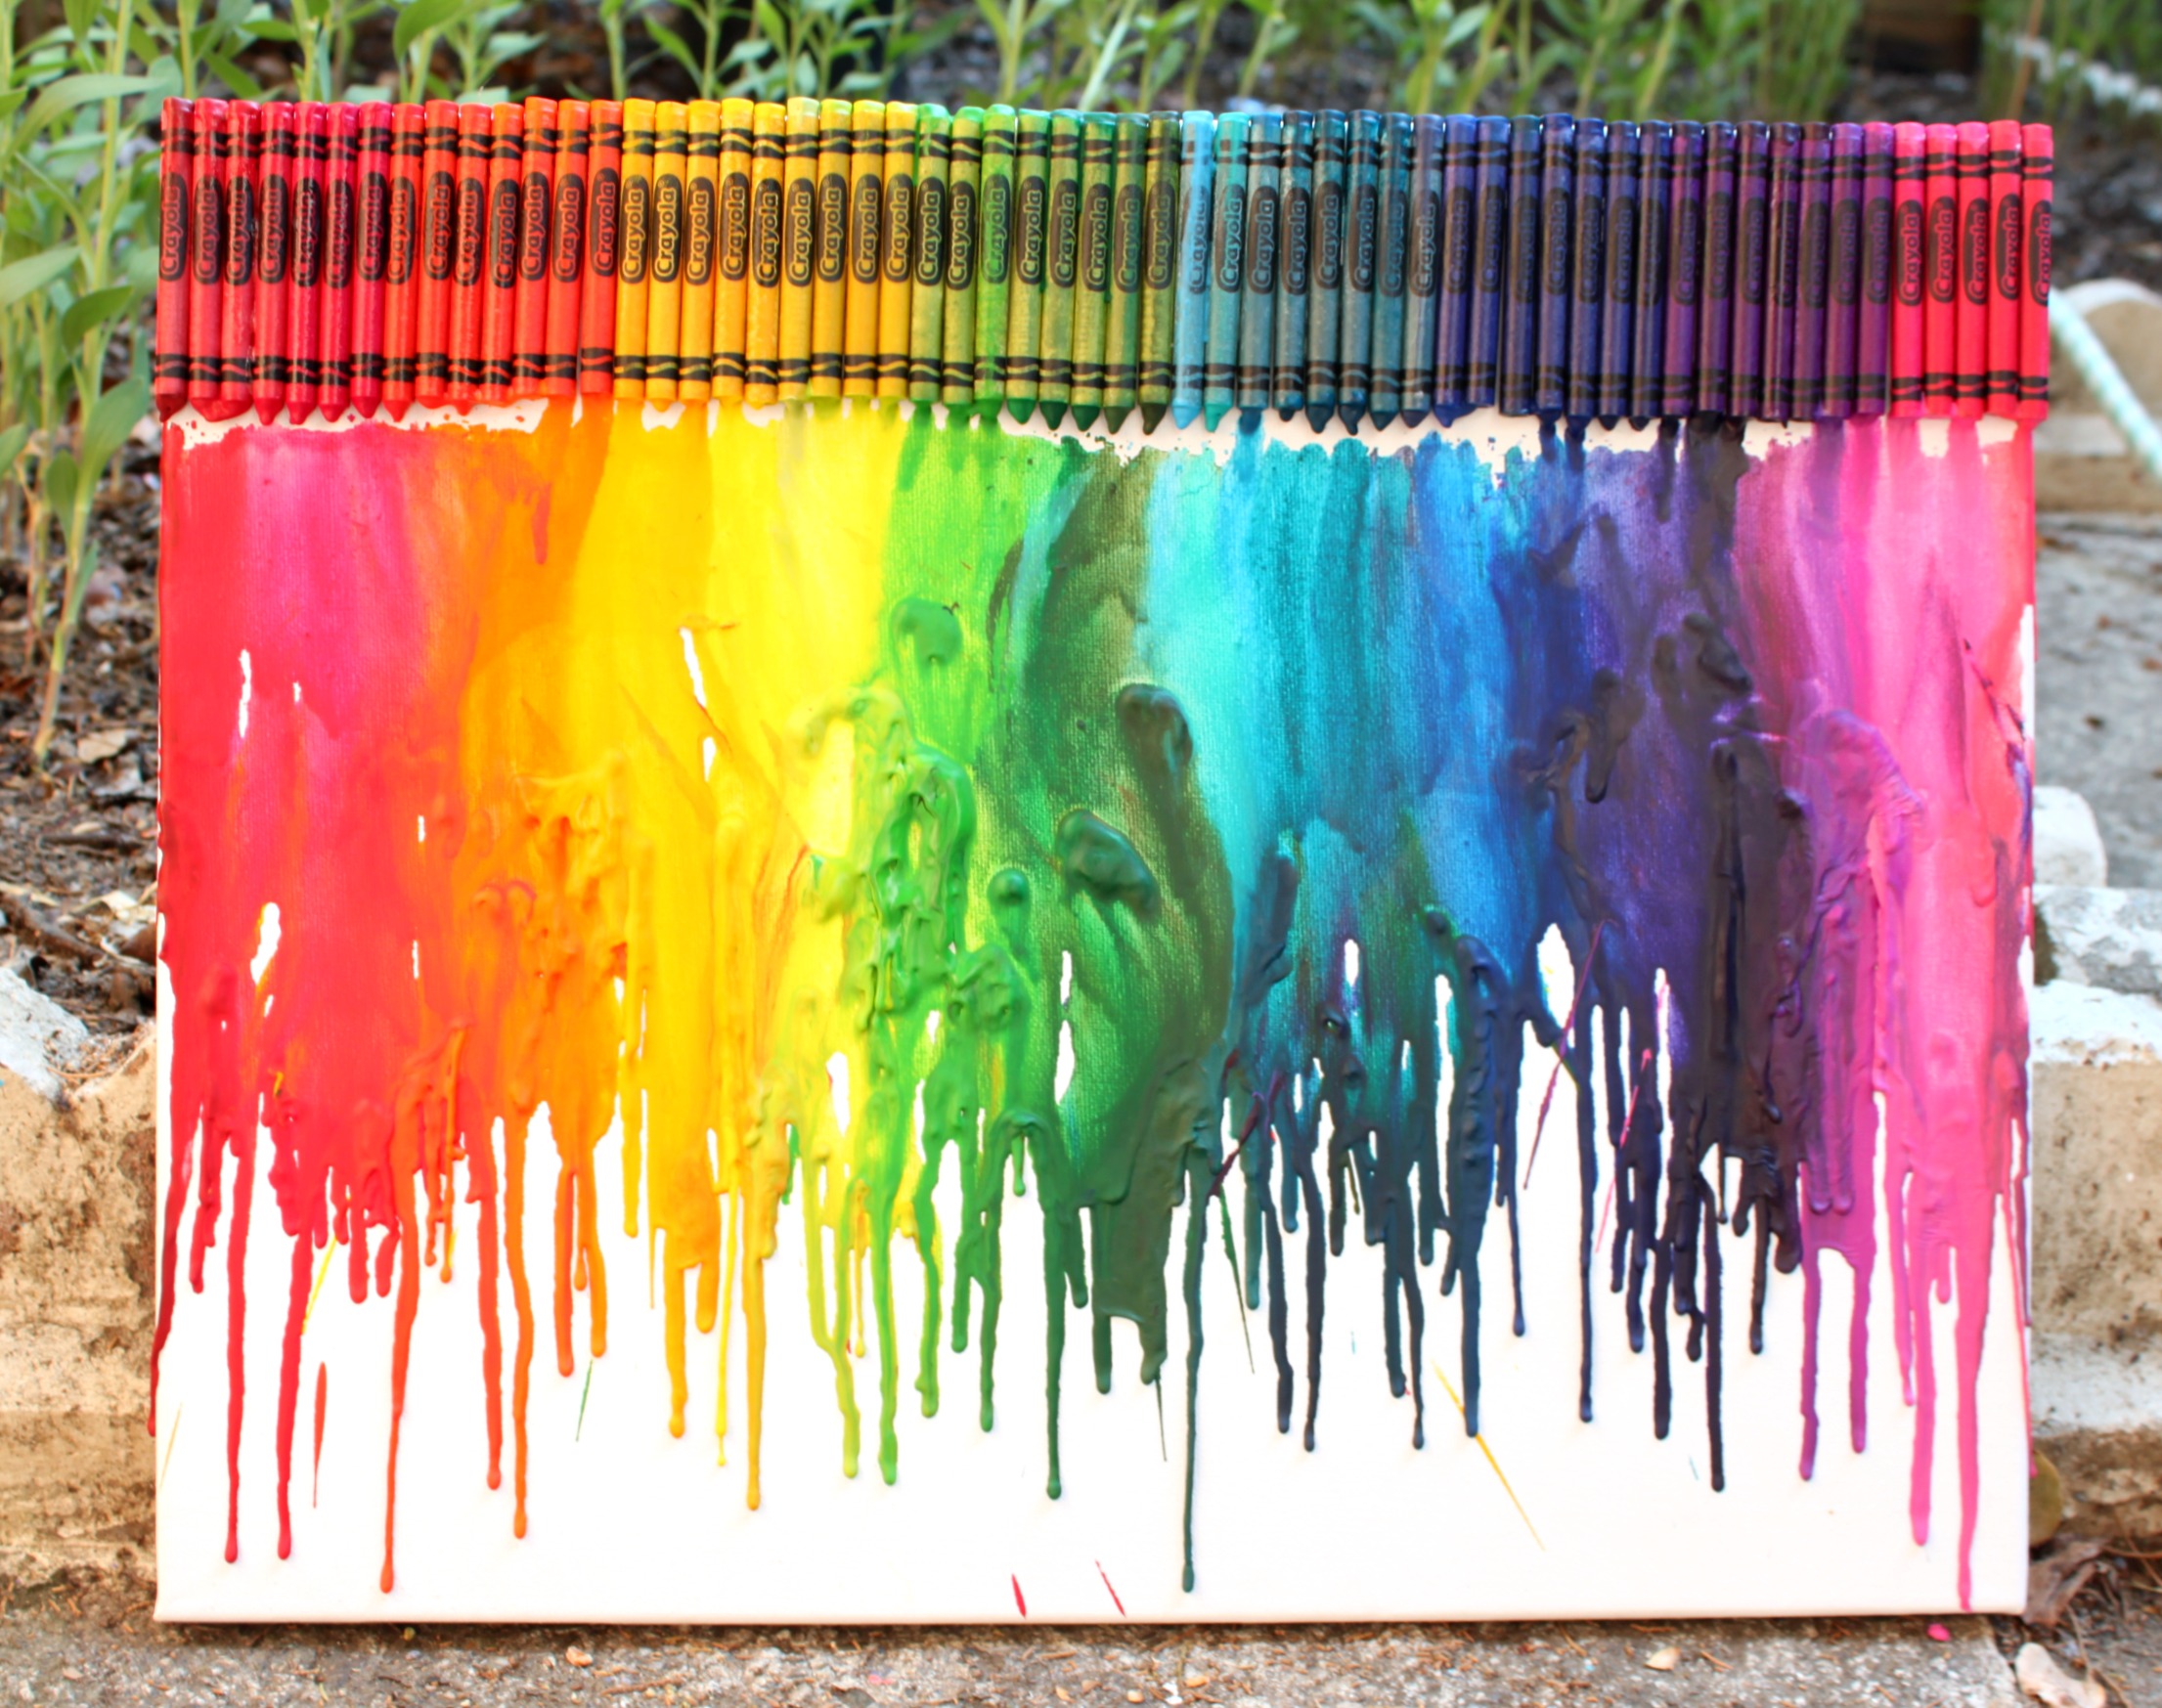 Bulk Crayons // Crayola Crayons // Crayon Melting Art // Crayon